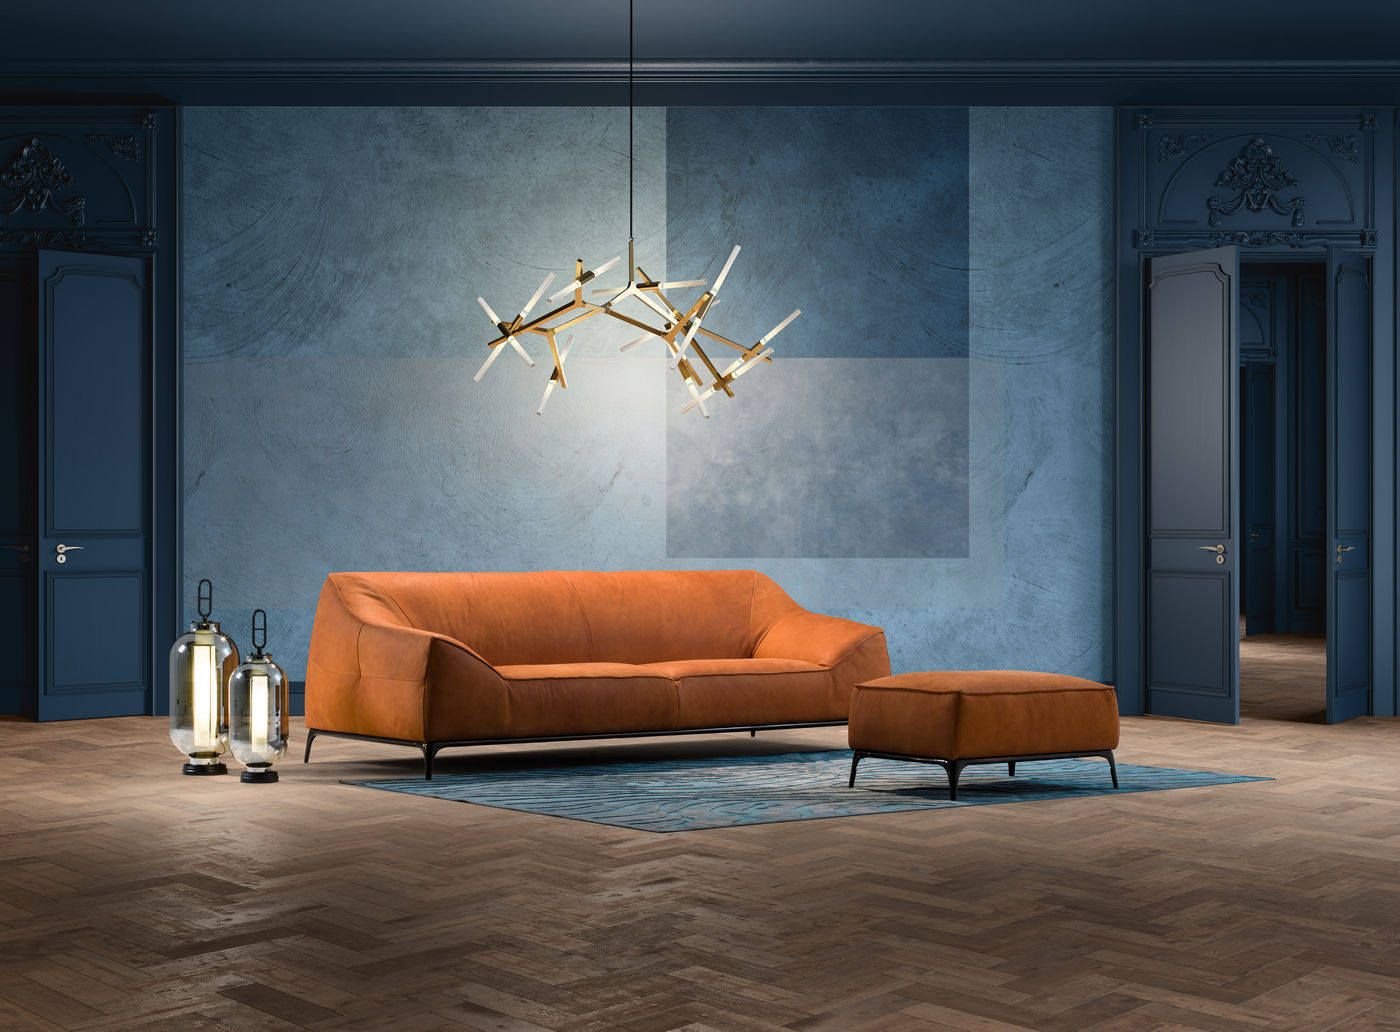 nuovo modello " Florence " Delta Salotti Soggiorno moderno divano,pelle,design,made in italy,artgianale,qualità,fatto a mano